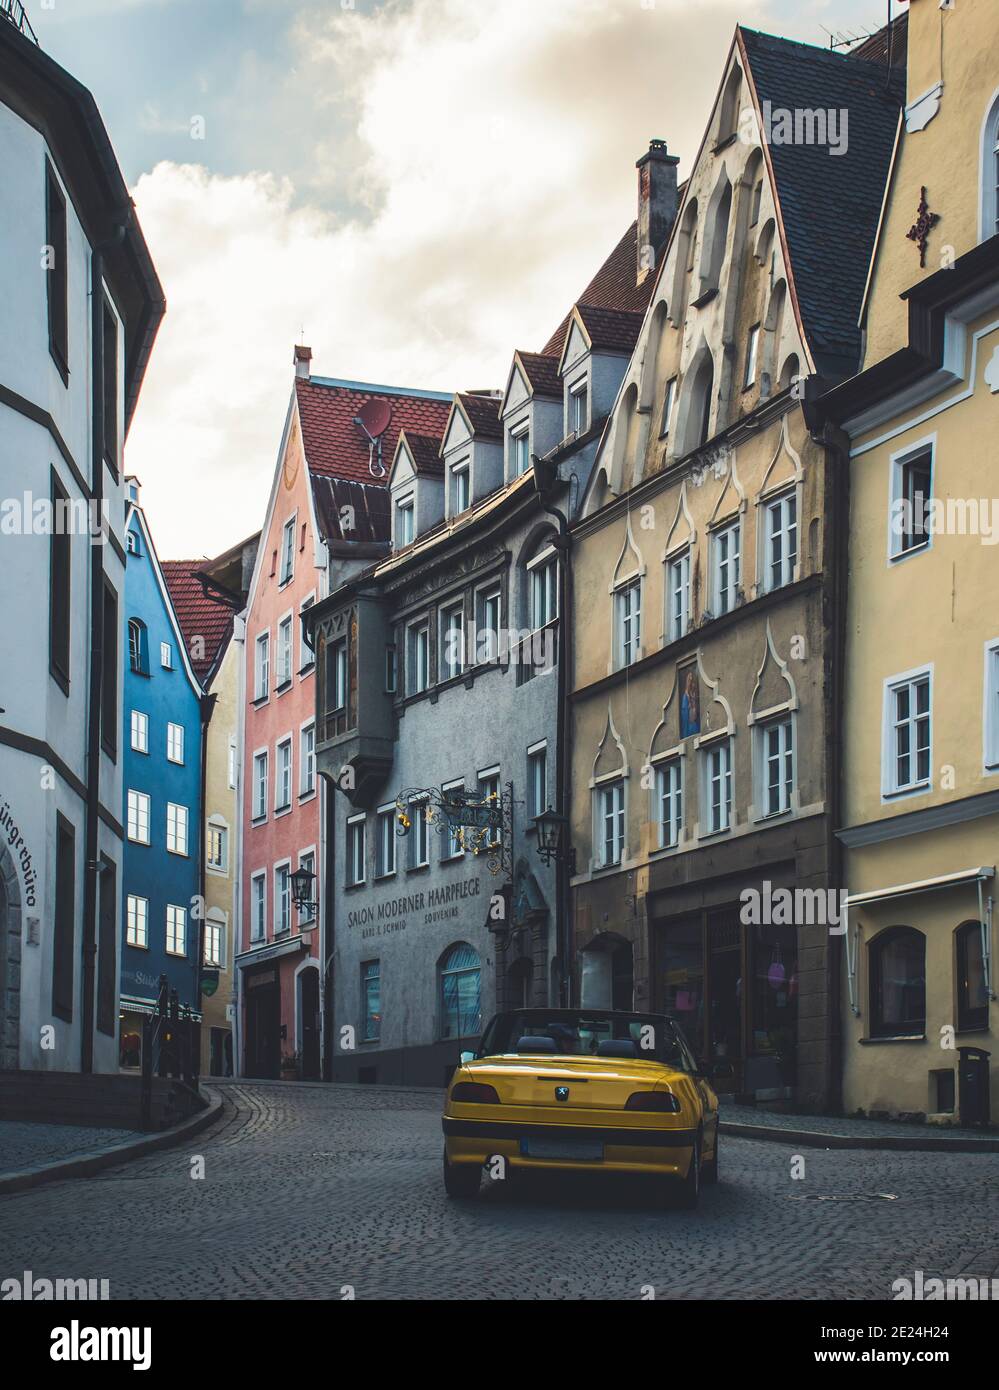 Füssen, Germania 26 maggio 2019 - Coppia felice di guidare in auto cabriolet gialla sopra la vecchia romantica città europea senza persone. Foto Stock